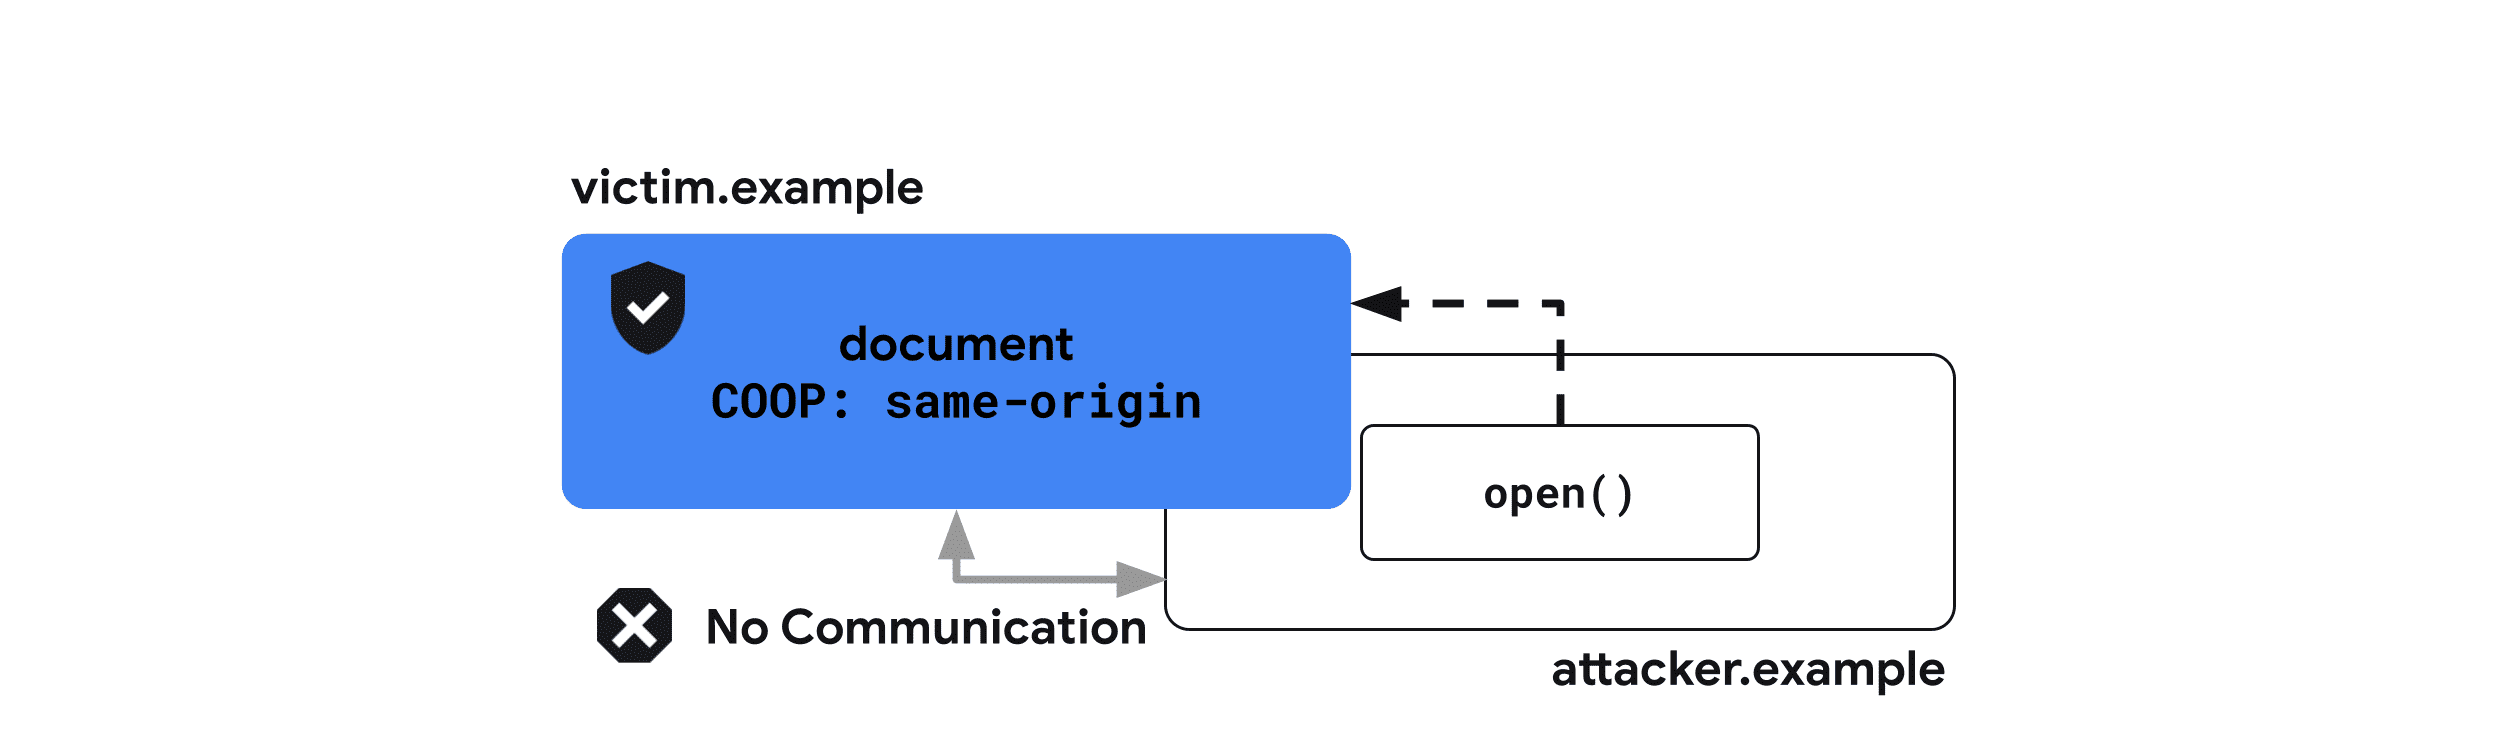 Cross-Origin-Opener-Policy： same-origin